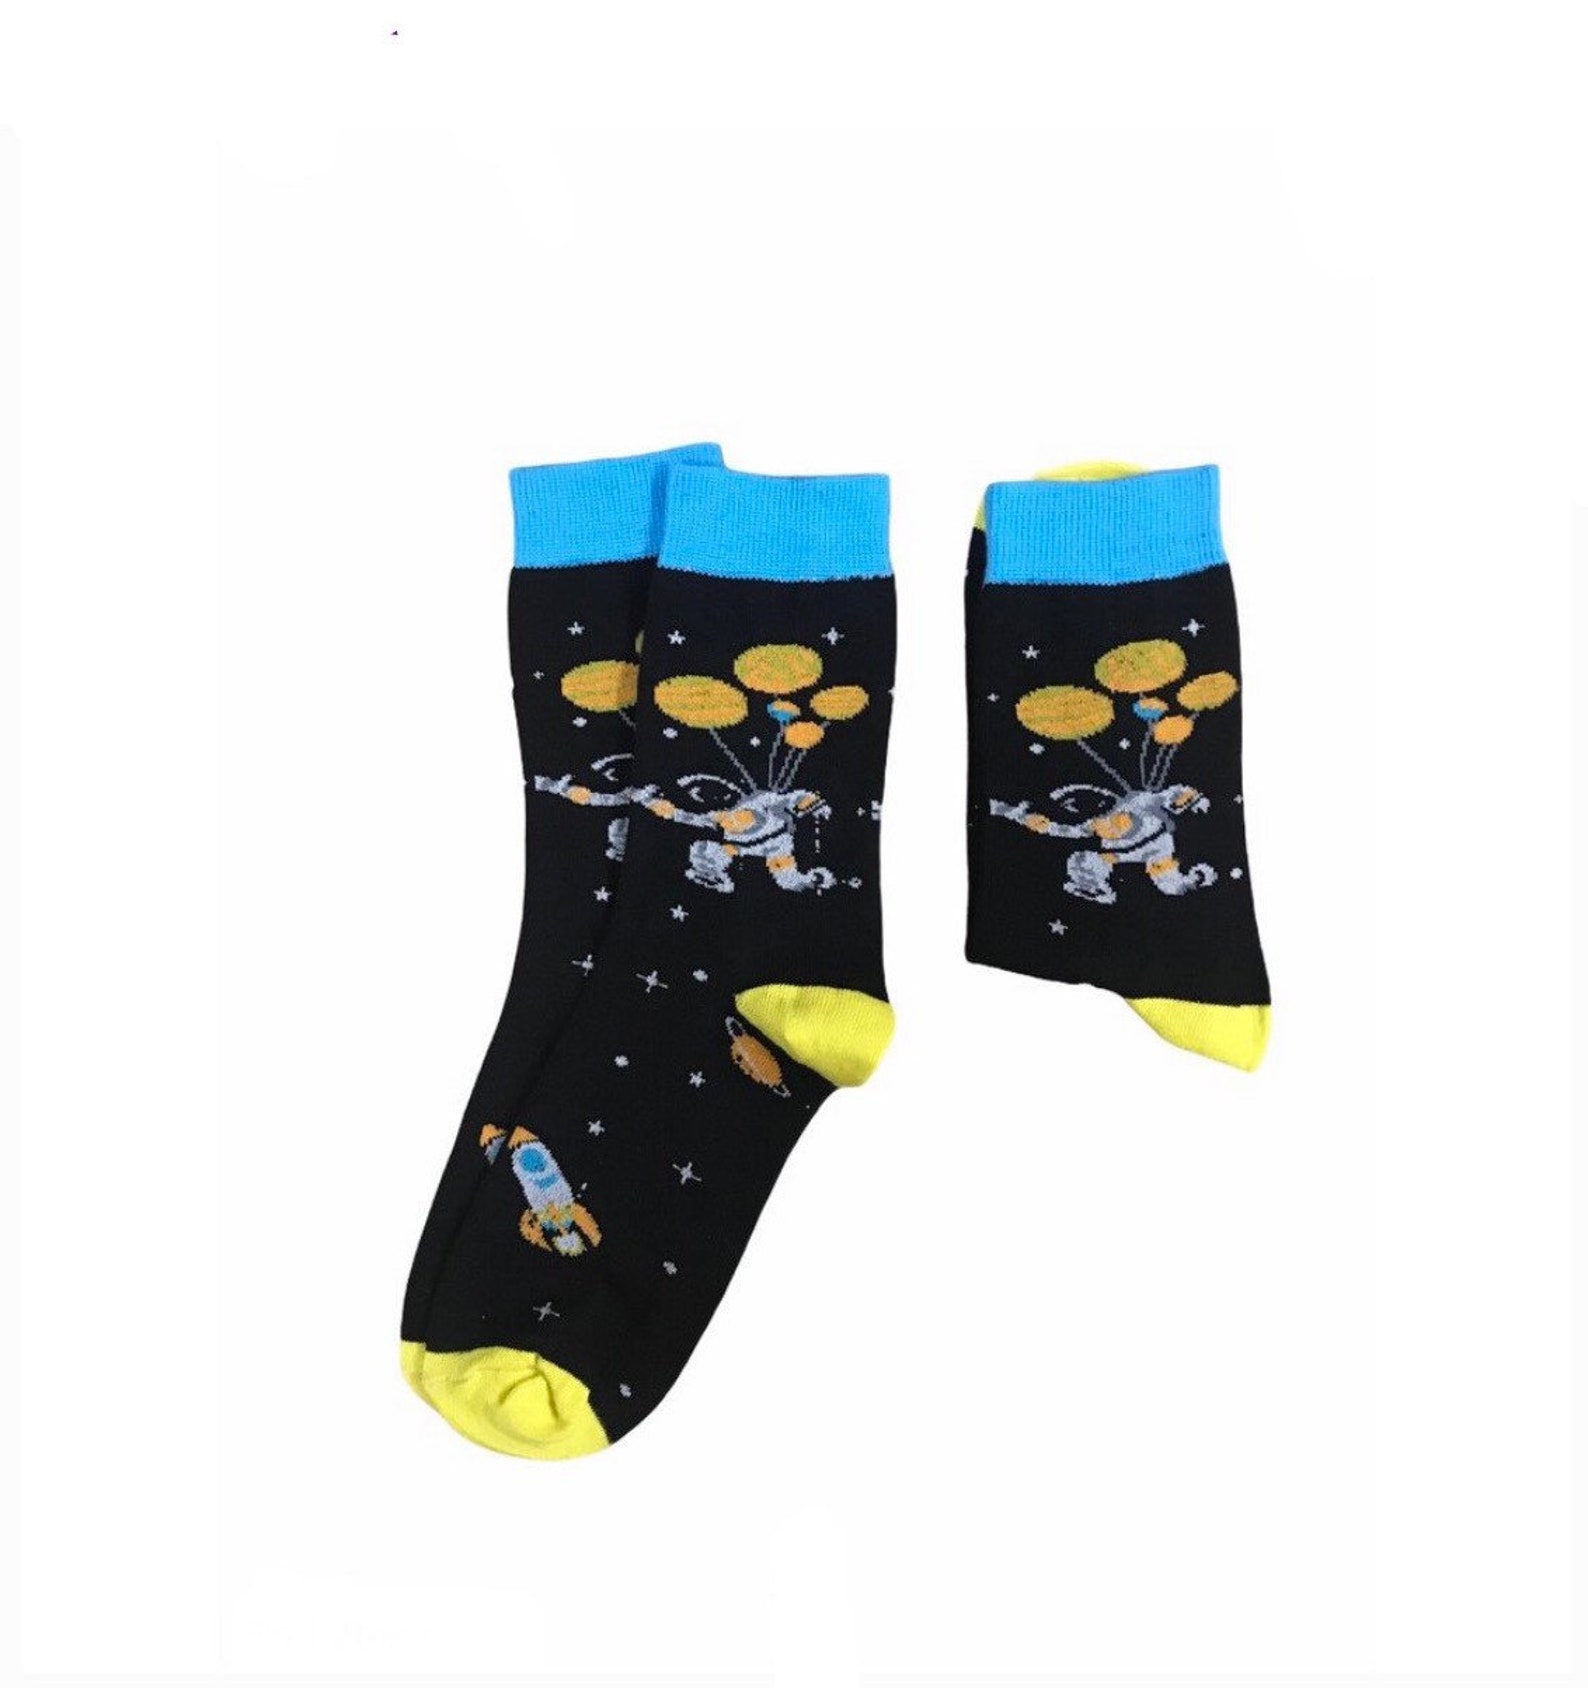 Space Astronaut Socks/Colourful Socks/Gift Socks/Novelty | Etsy